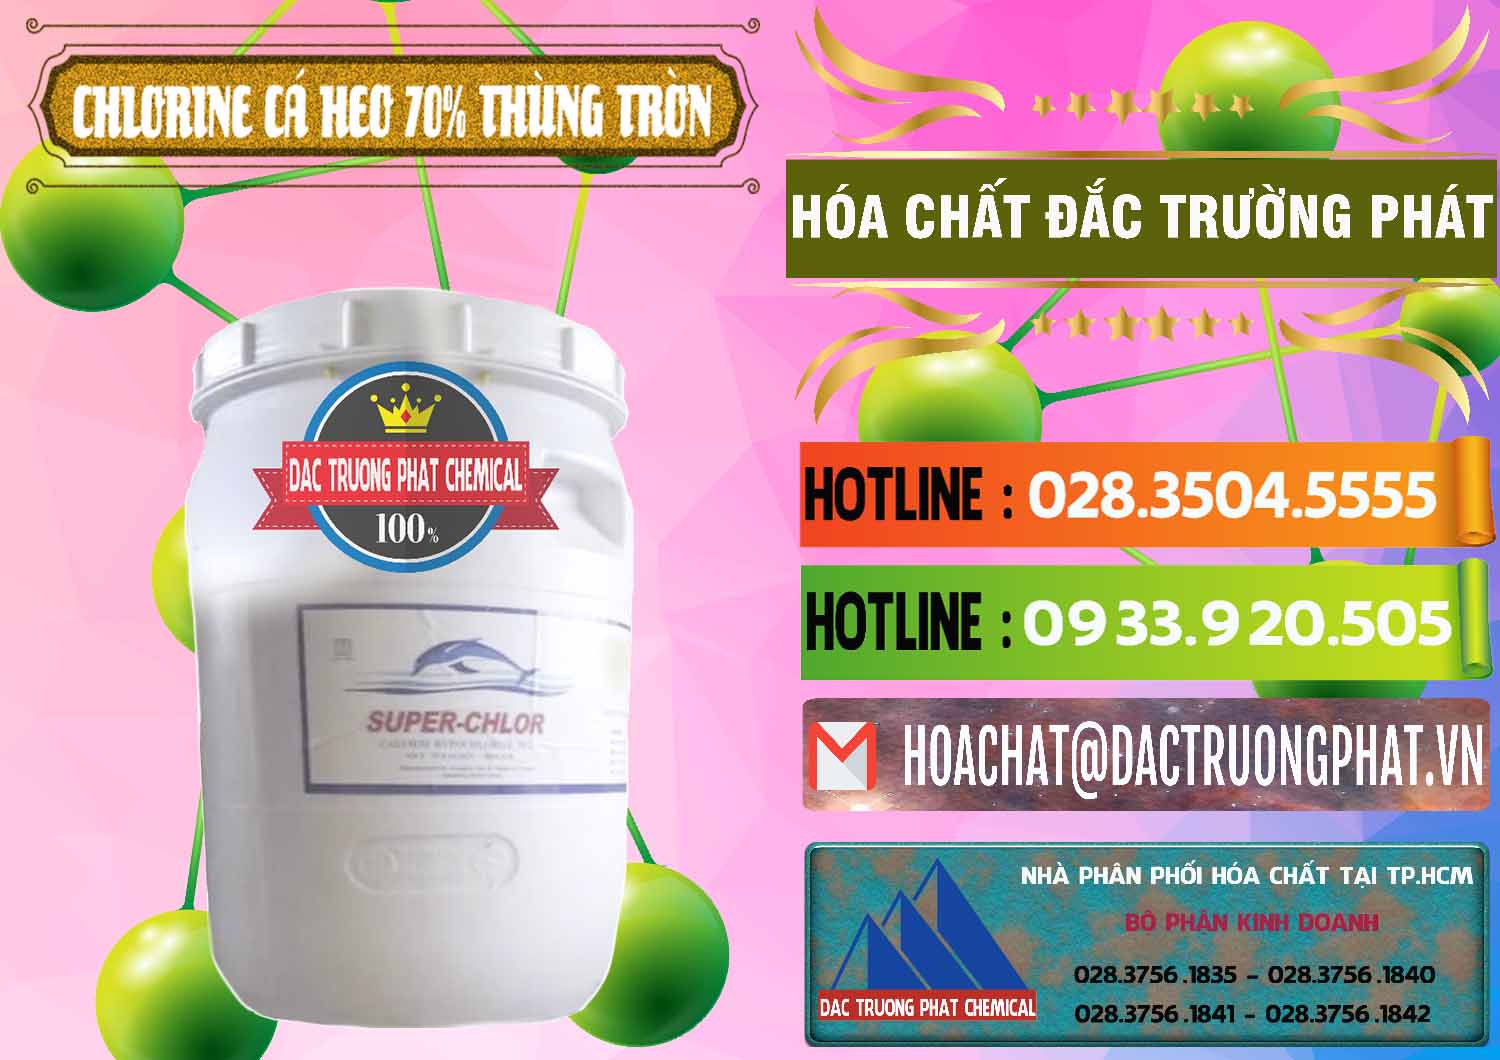 Công ty bán & cung cấp Clorin - Chlorine Cá Heo 70% Super Chlor Thùng Tròn Nắp Trắng Trung Quốc China - 0239 - Cty kinh doanh & phân phối hóa chất tại TP.HCM - cungcaphoachat.com.vn